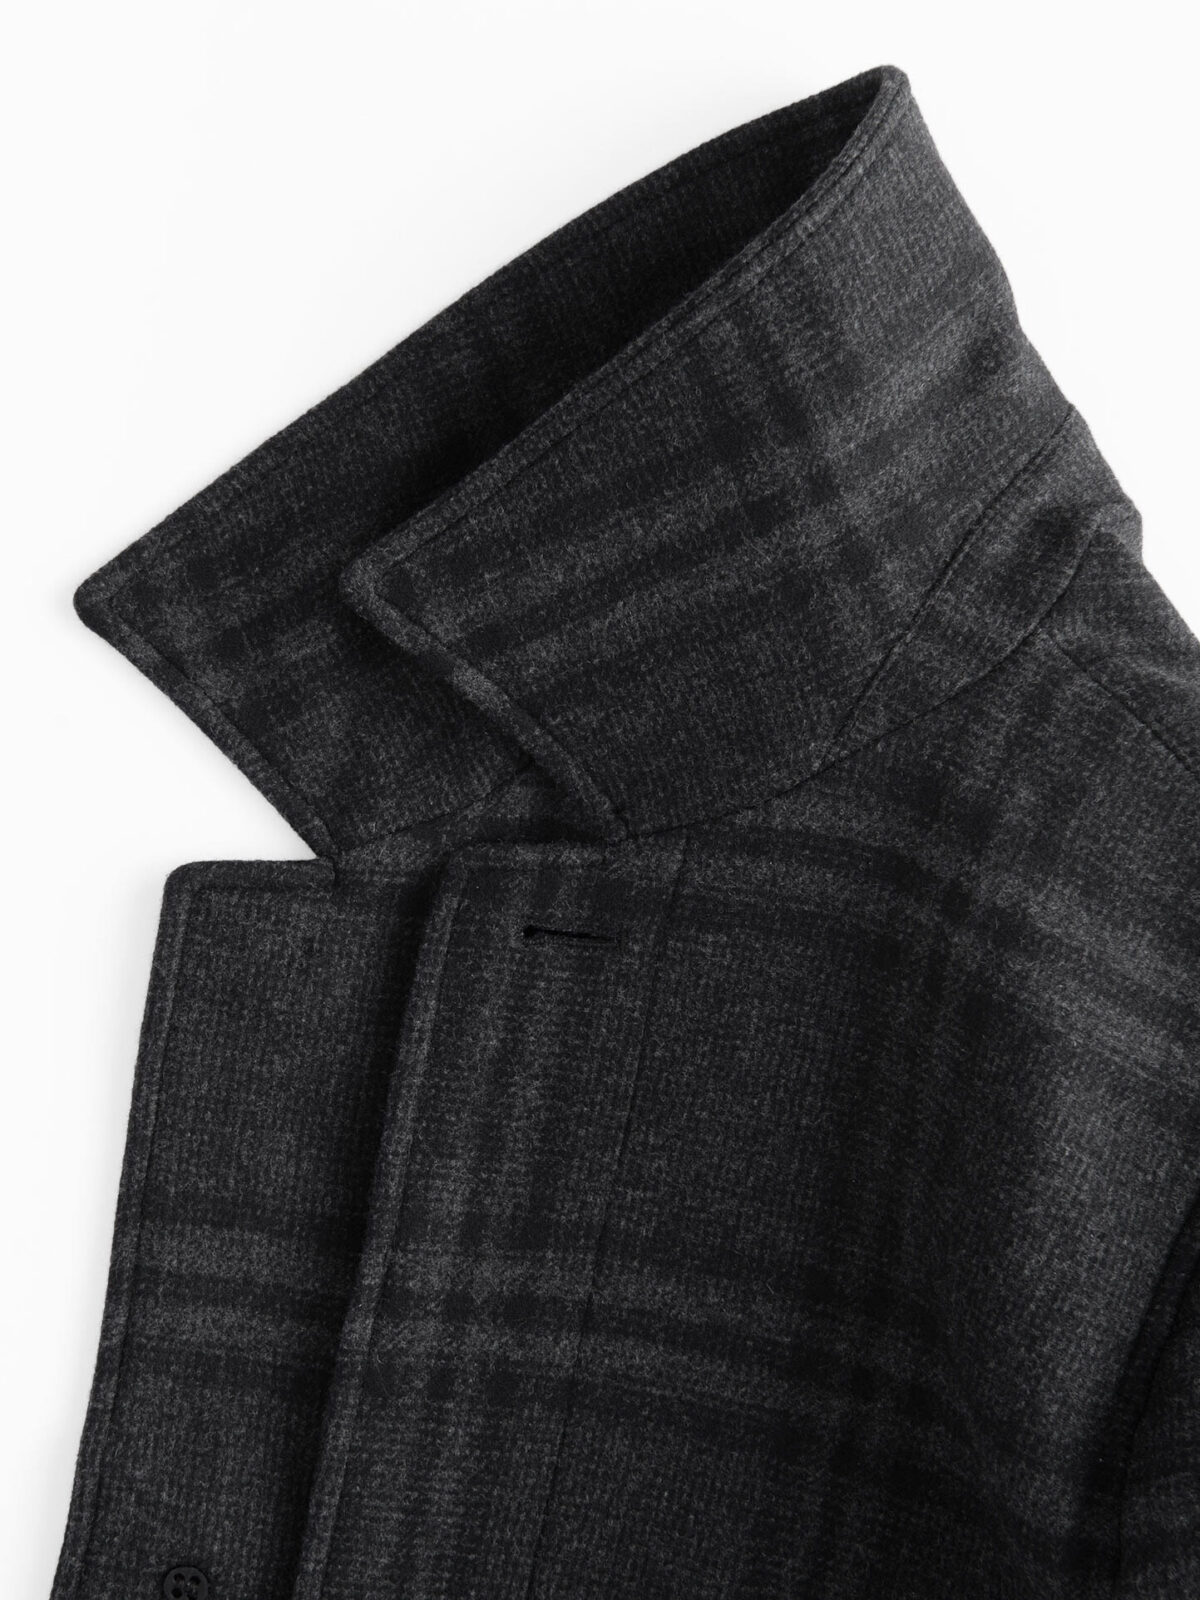 Lazio Charcoal Plaid Wool Coat